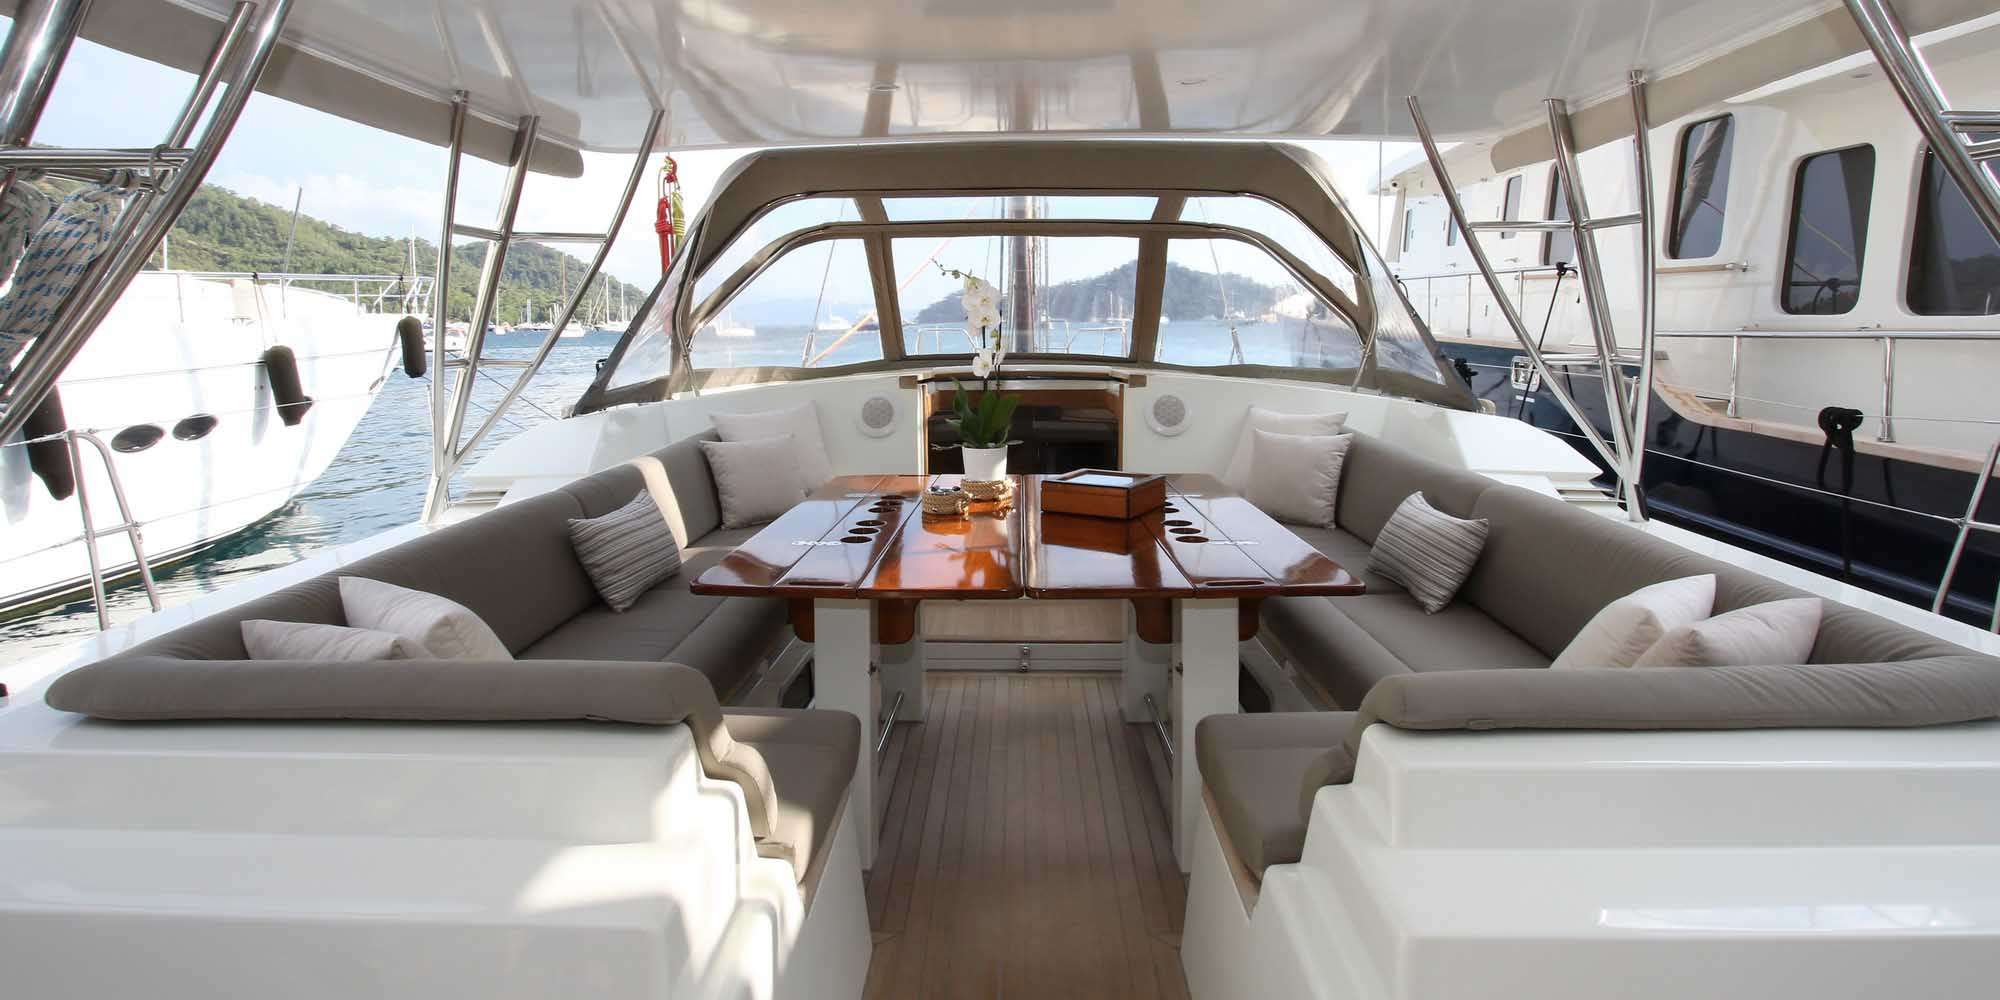 ICHTUS - Yacht Charter Monaco & Boat hire in Fr. Riviera & Tyrrhenian Sea 3